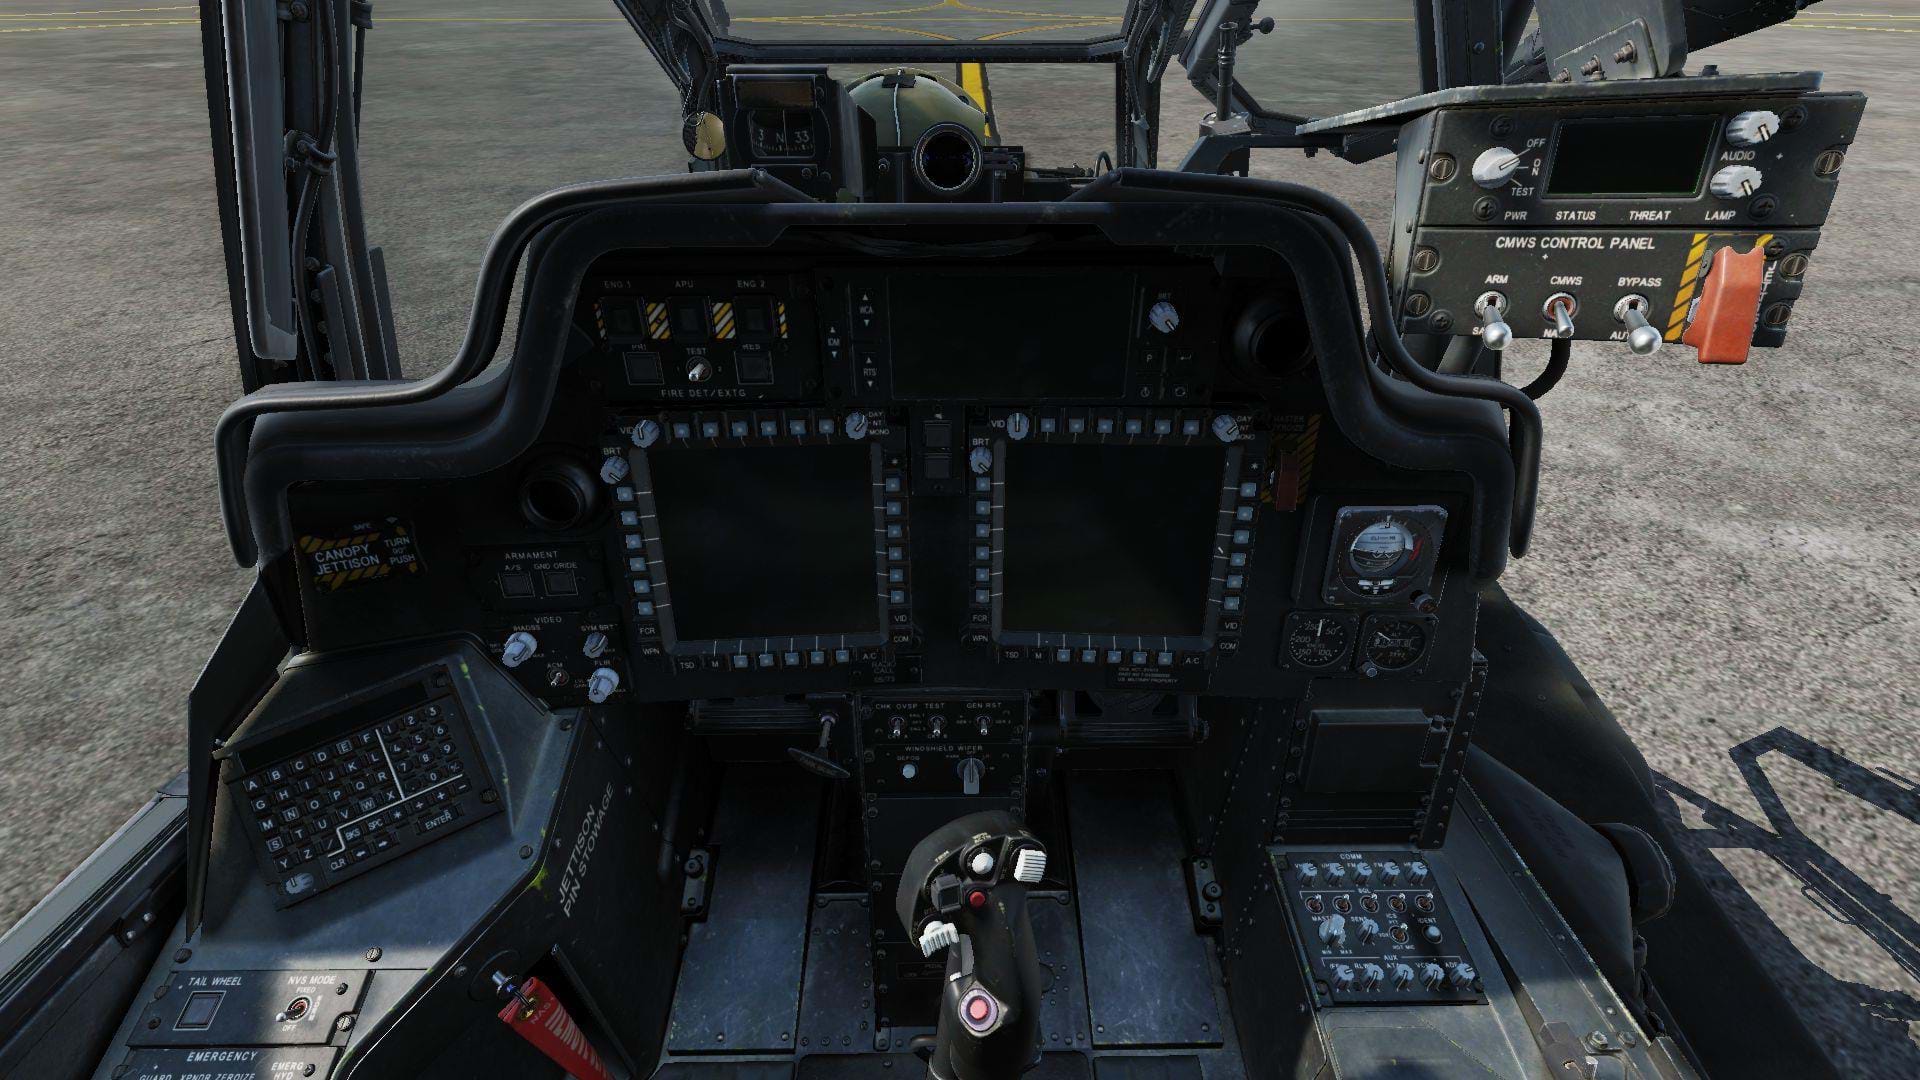 AH-64D Apache for DCS